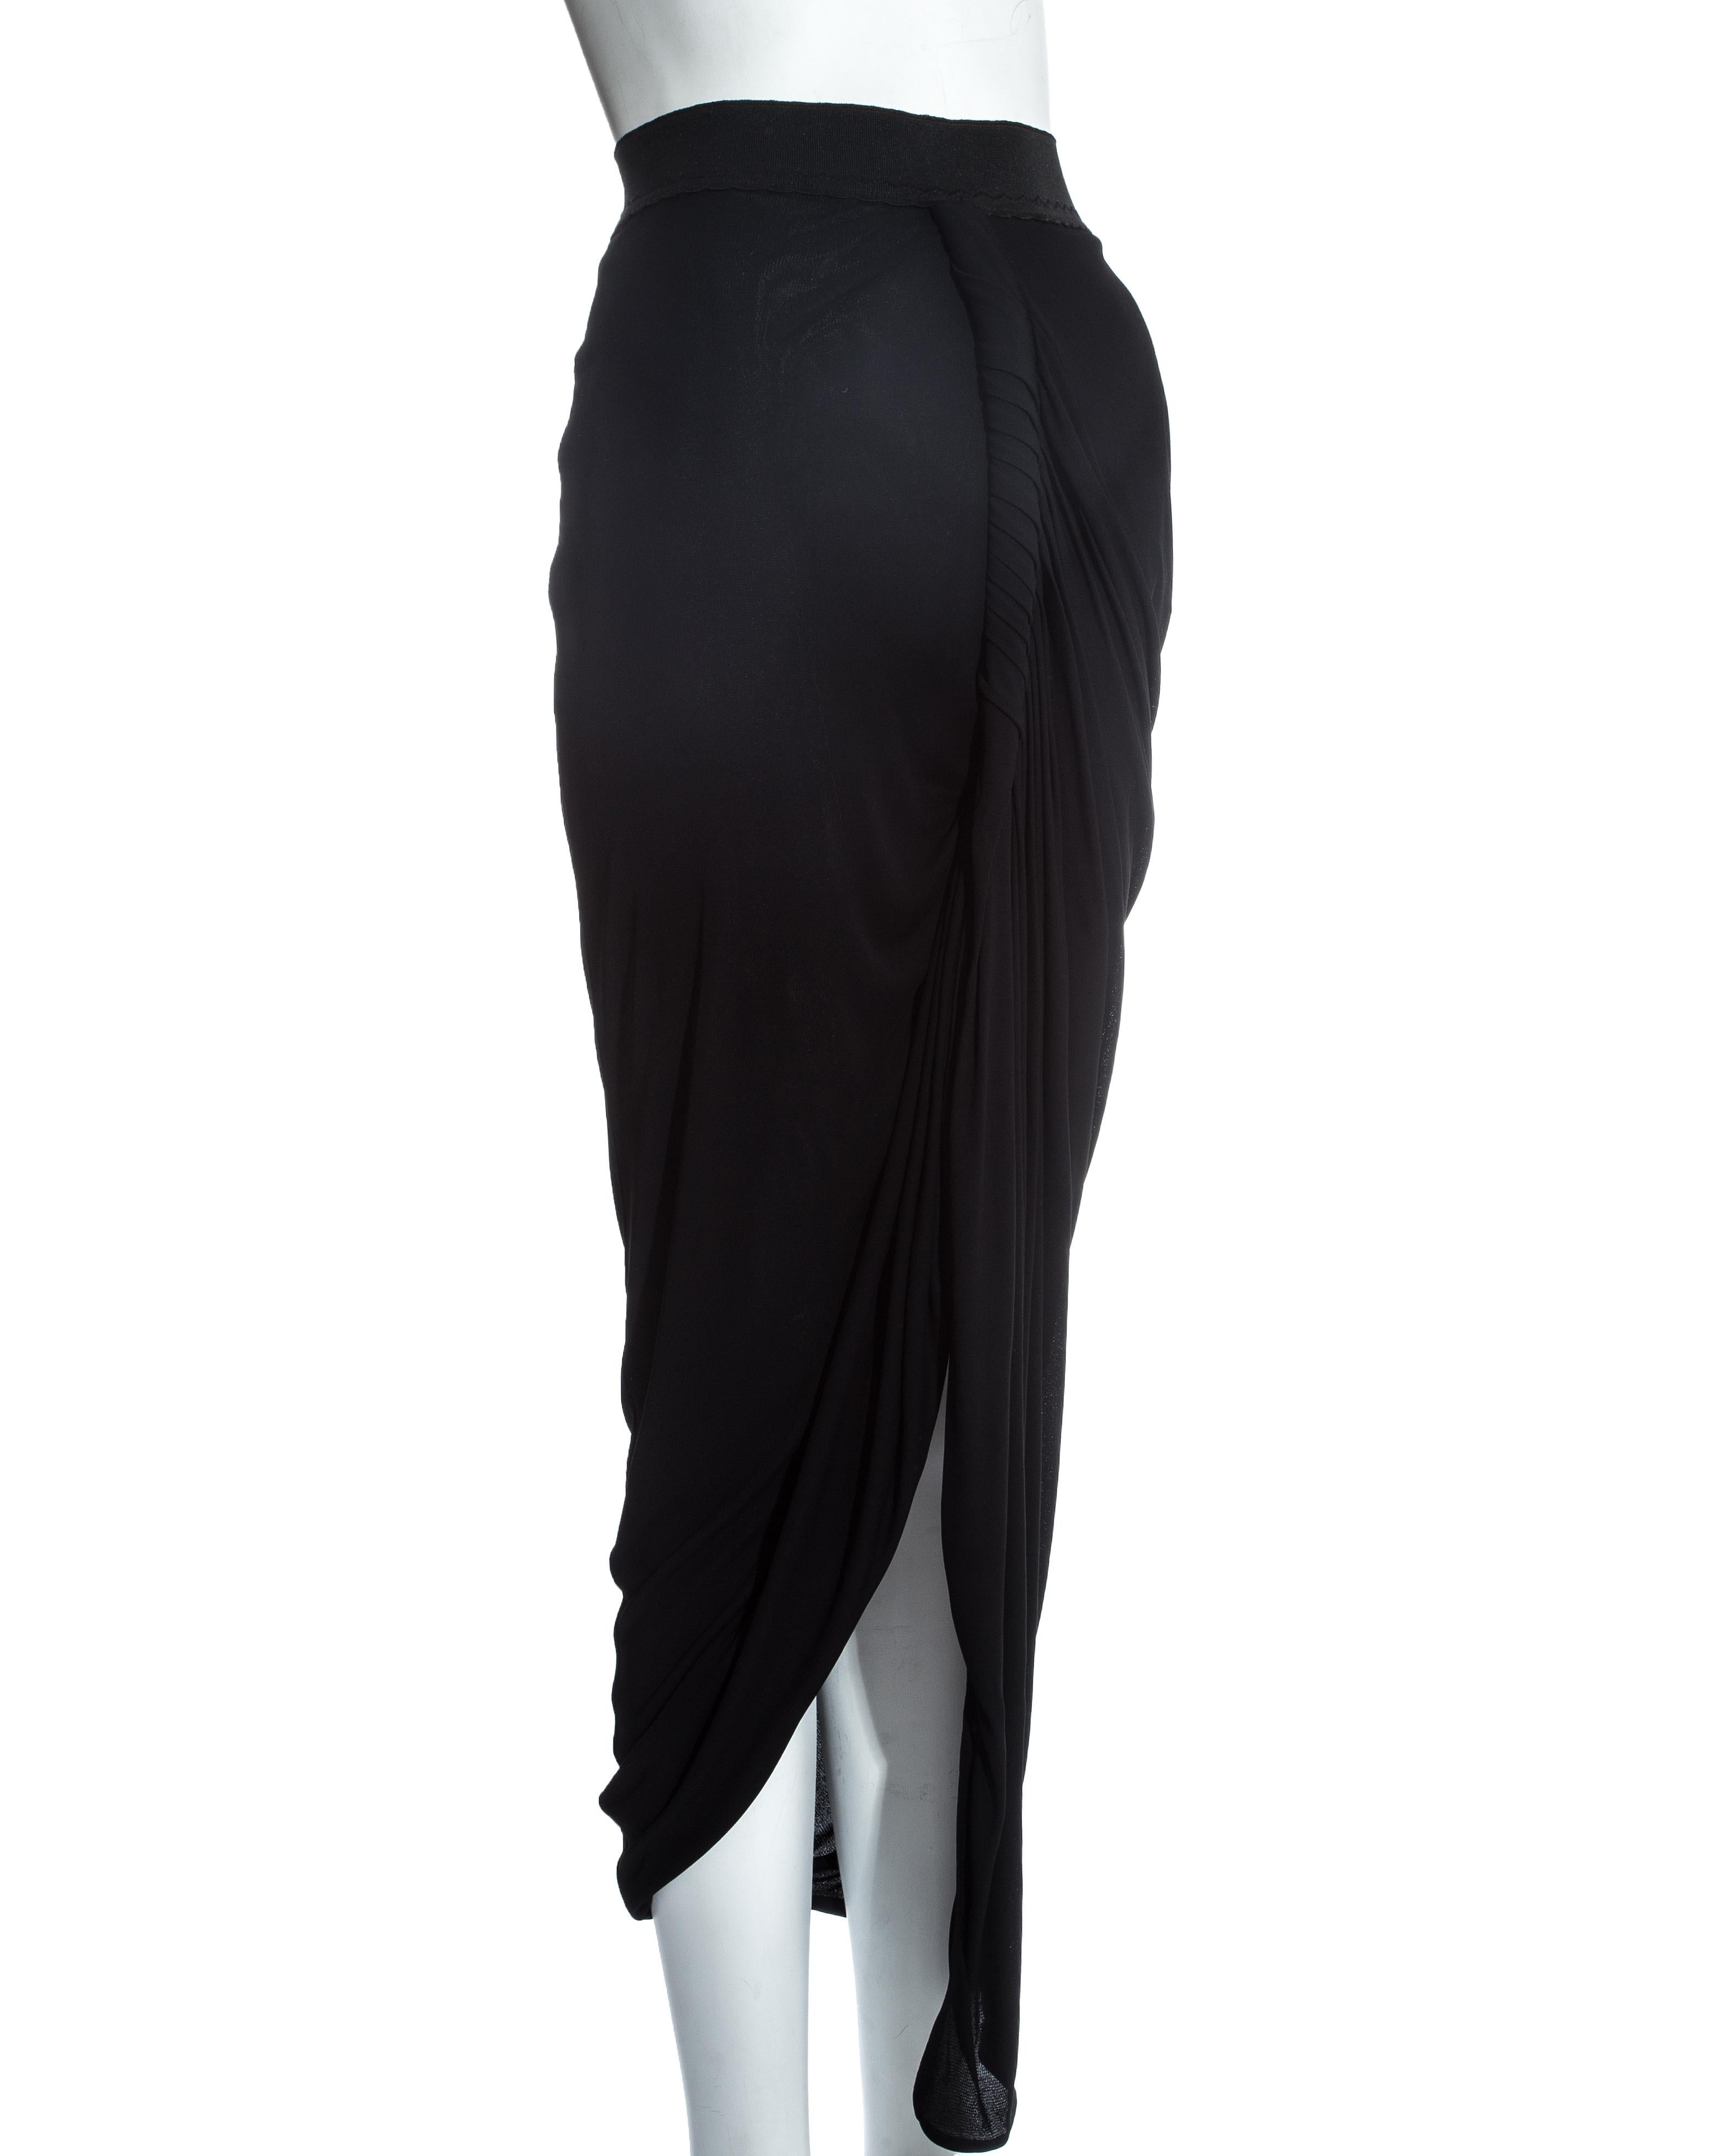 Jean Paul Gaultier black jersey draped evening skirt, ss 2009 1